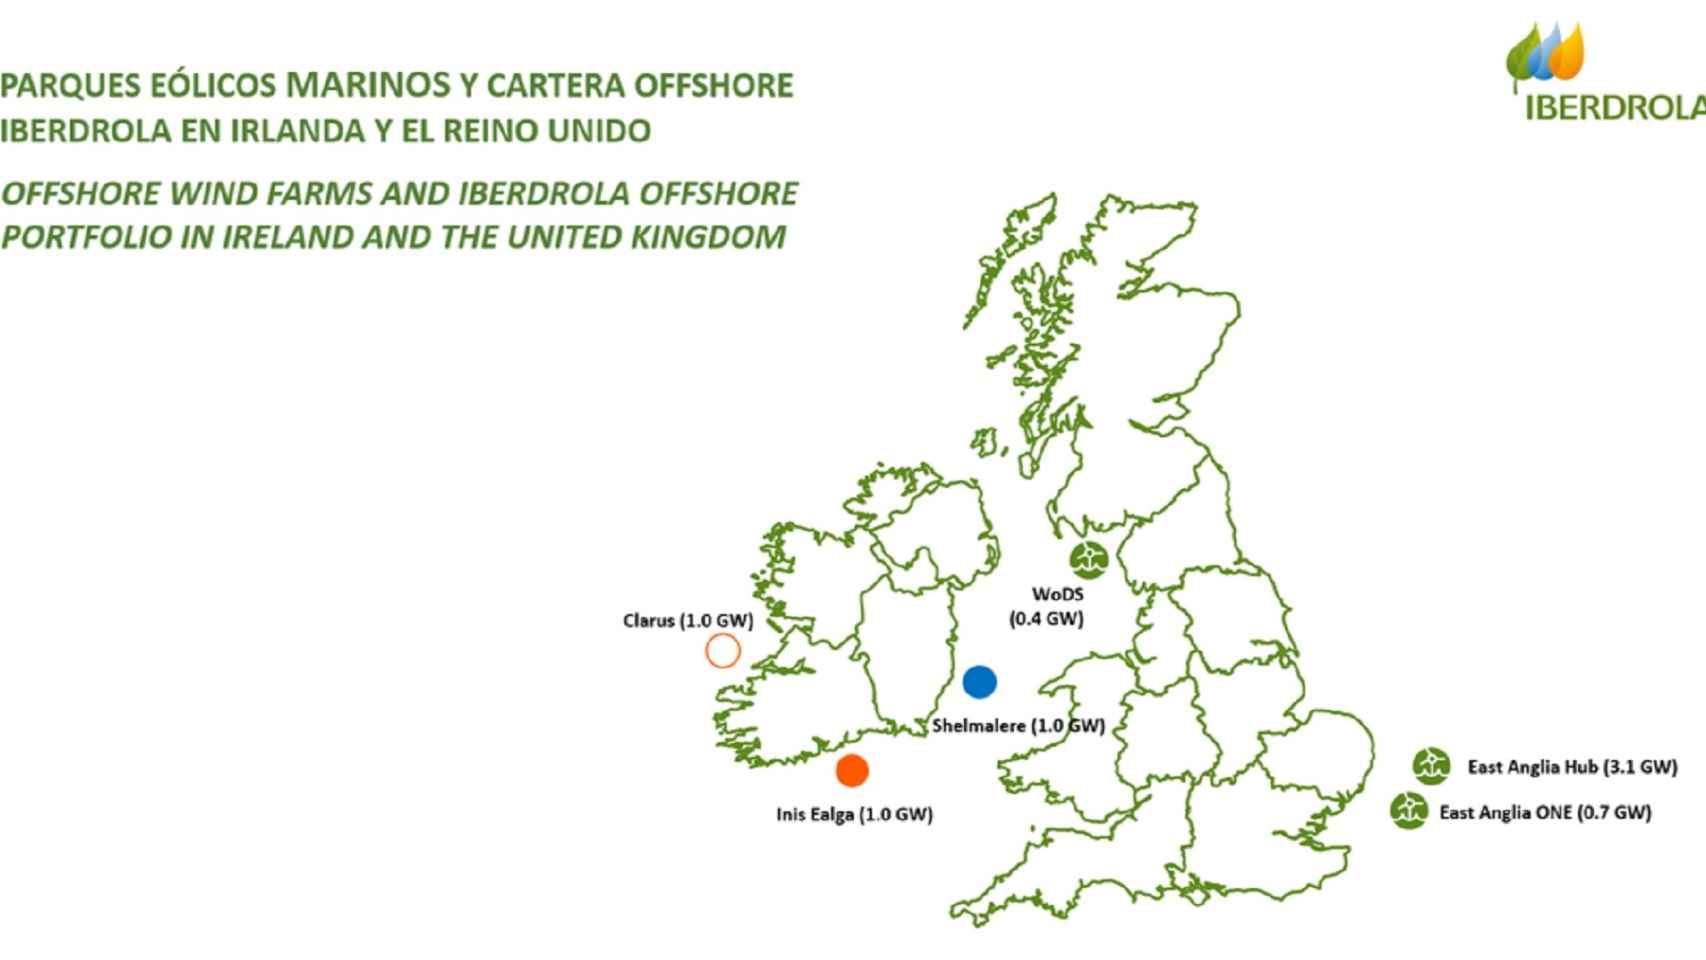 Cartera offshore de Iberdrola en Irlanda e Inglaterra